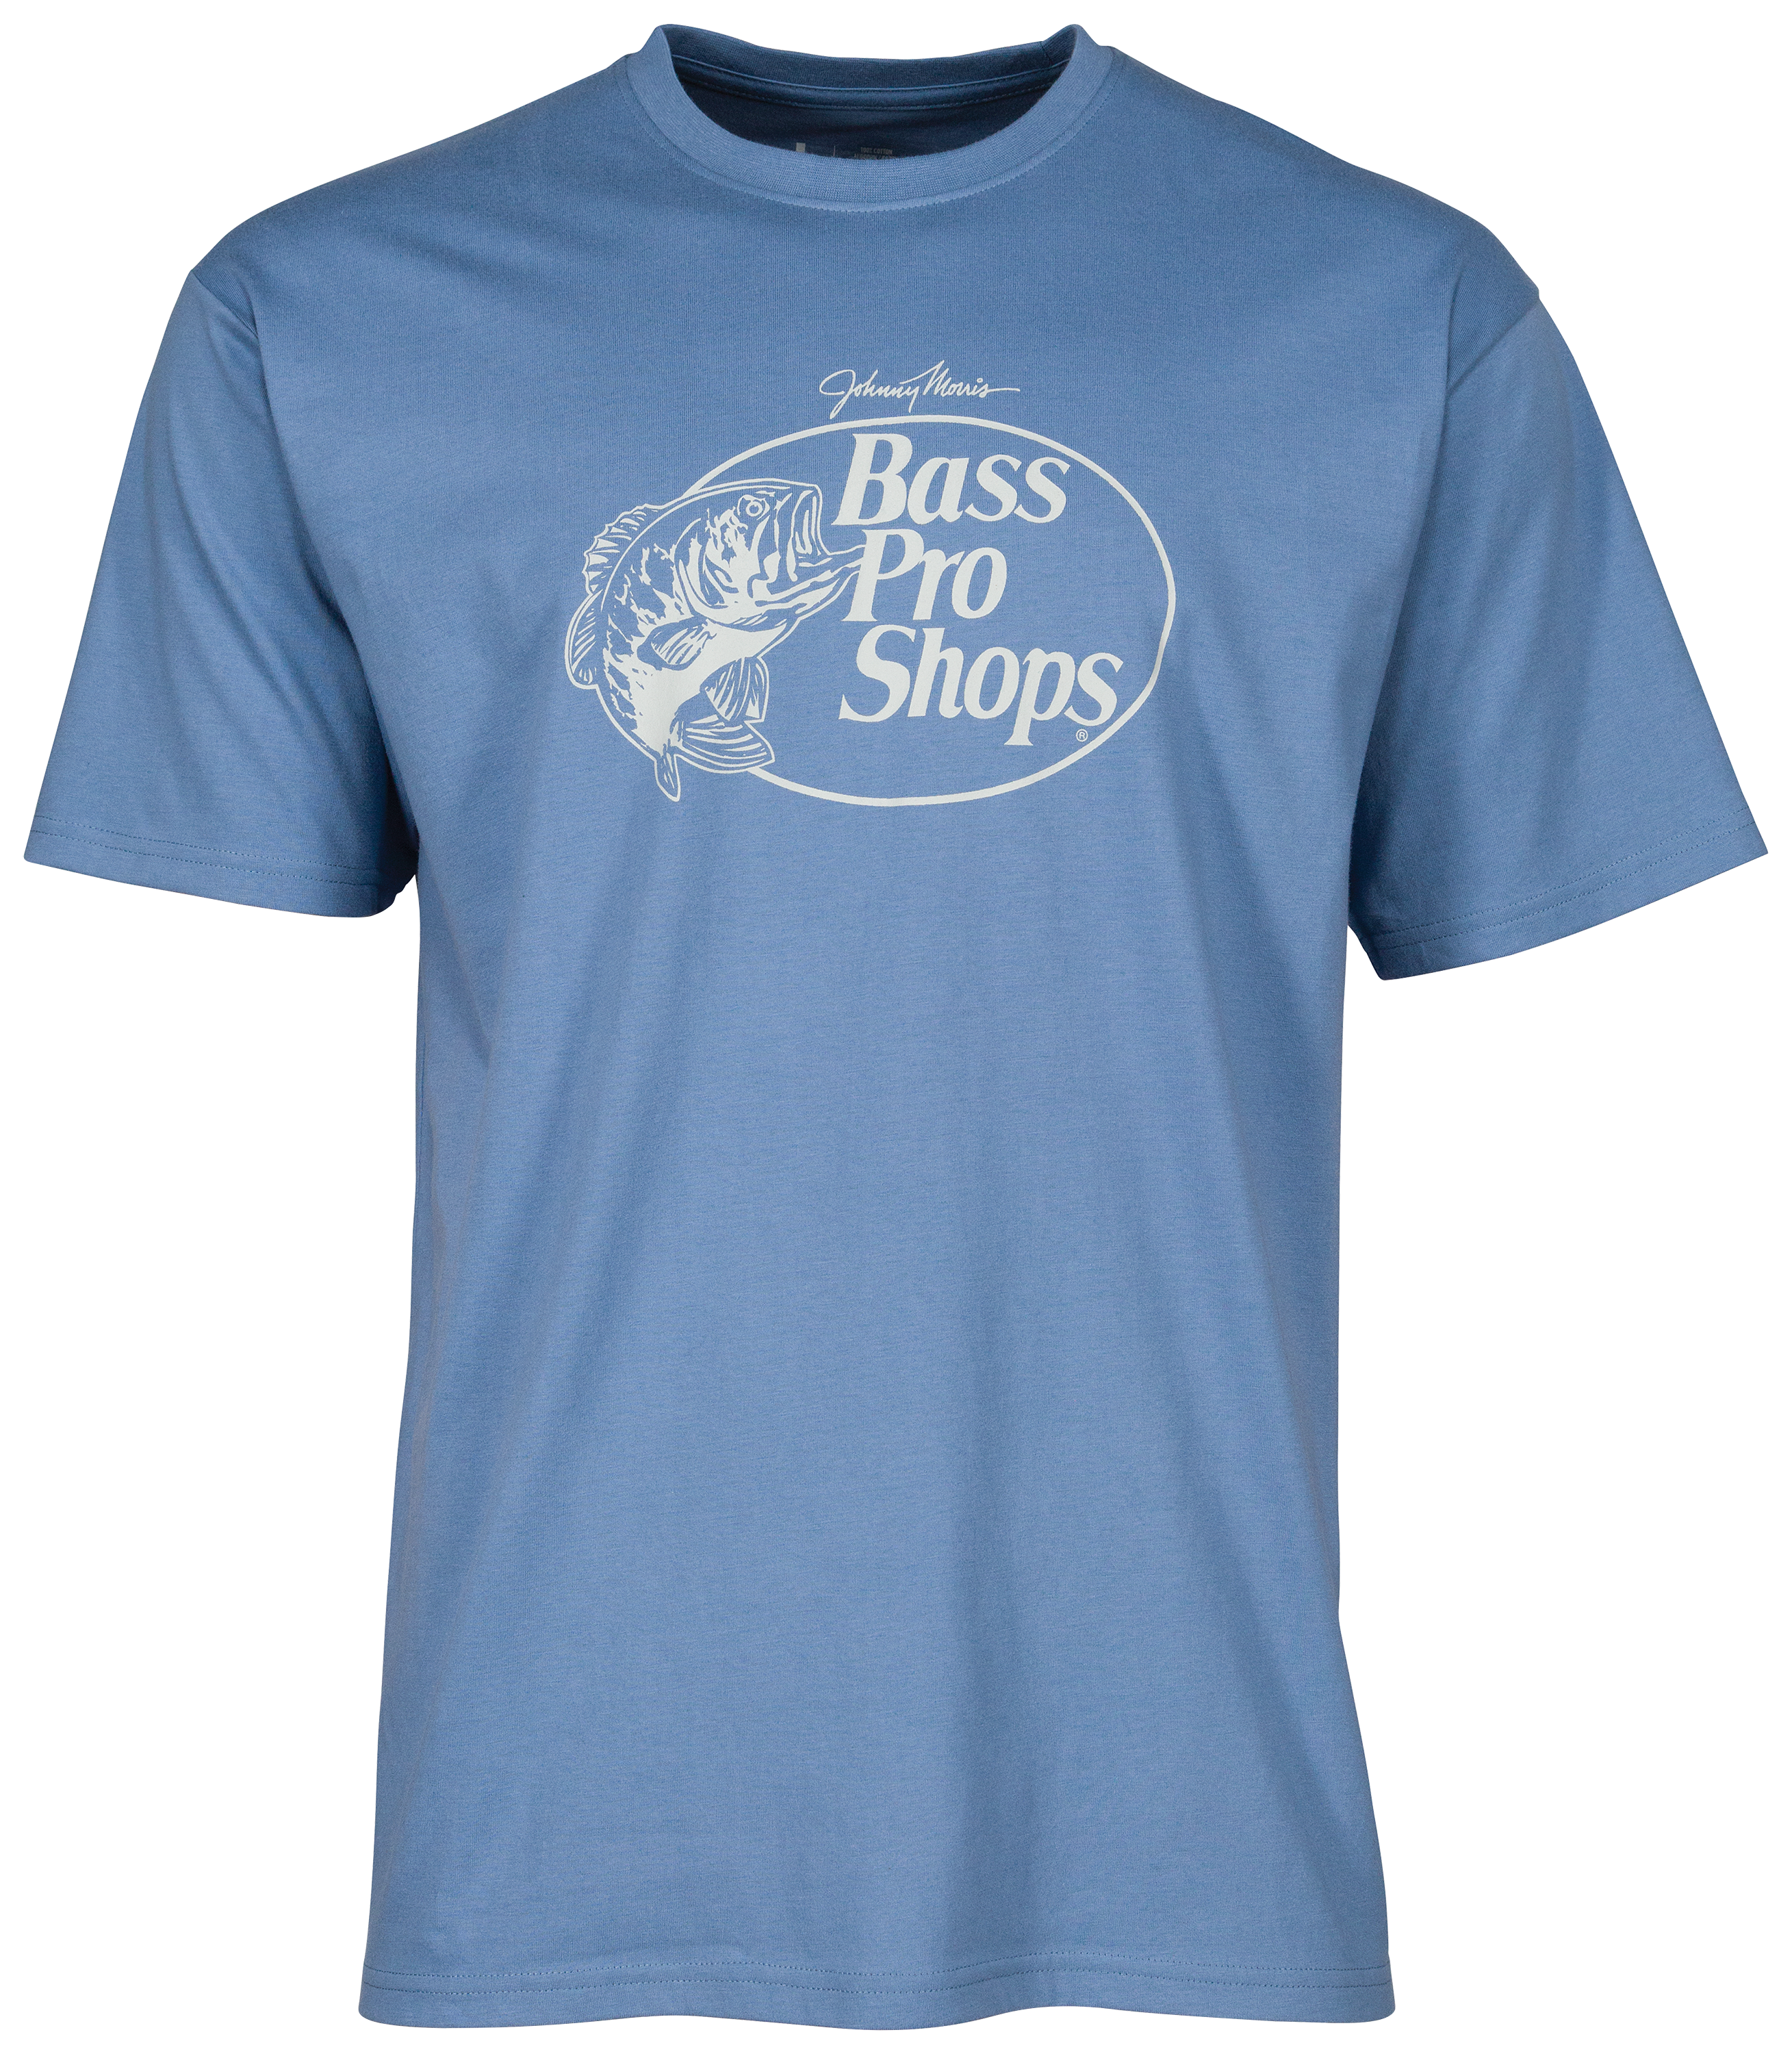 Bass Pro Shops Original Logo 2.0 T-Shirt for Men - Navy - 2XL